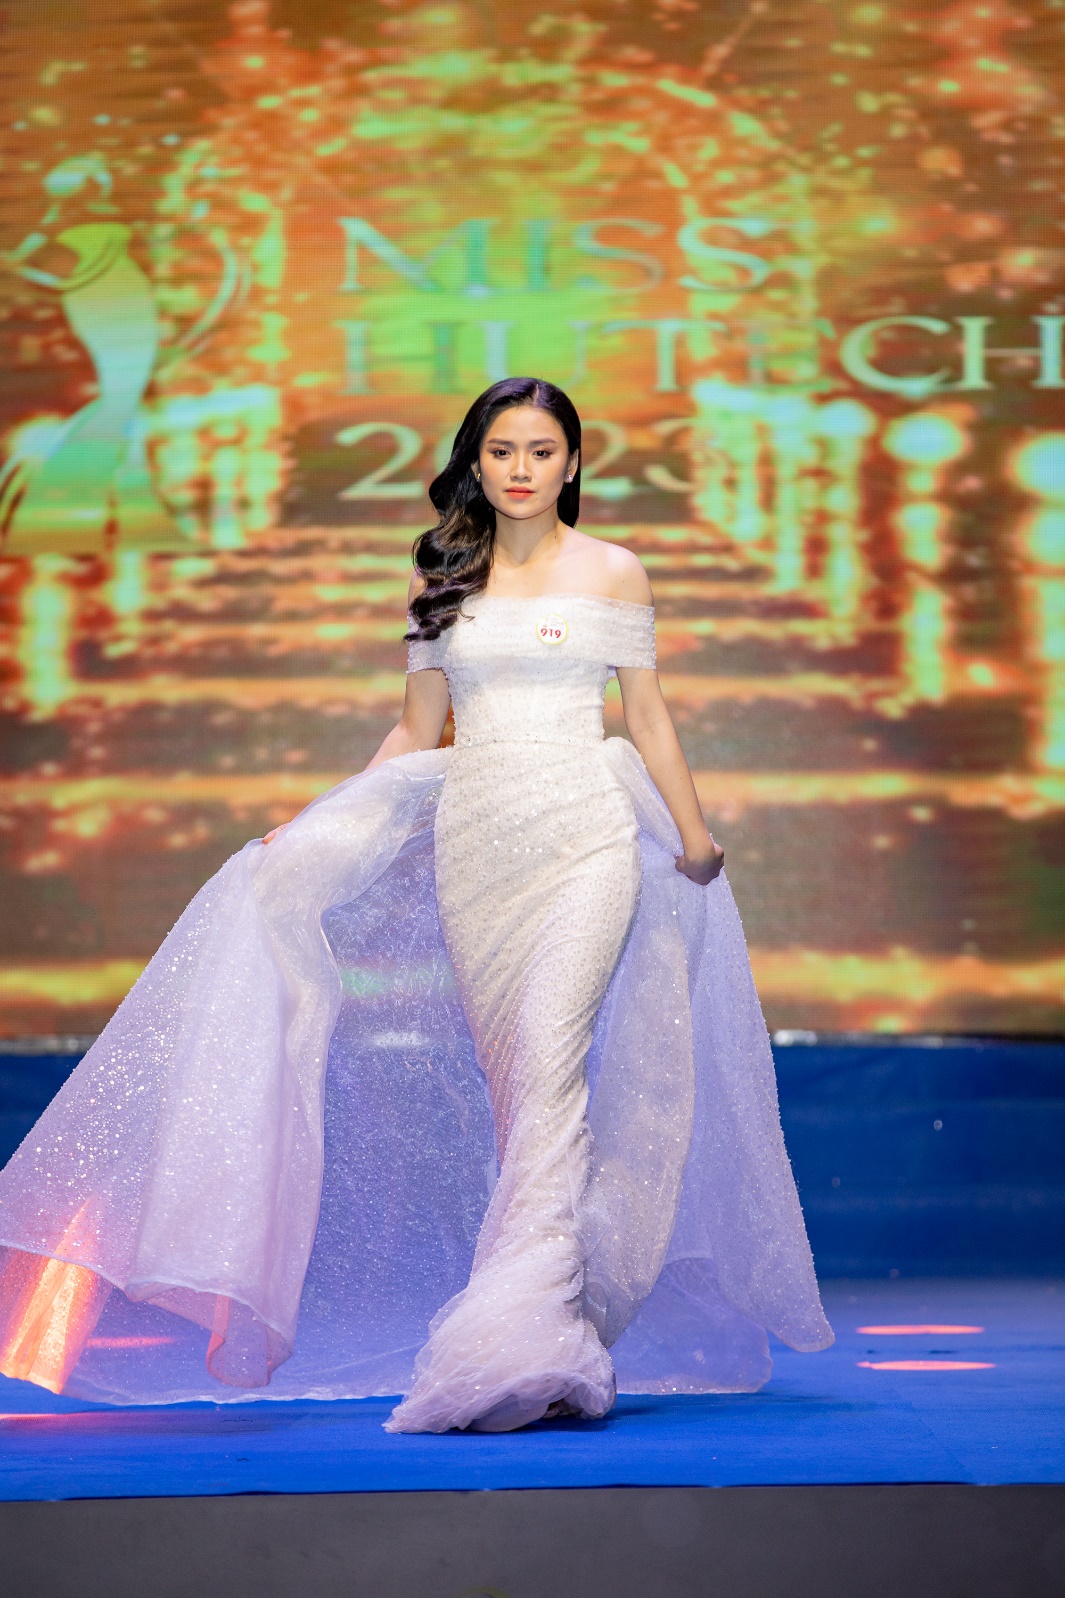 Hoa khôi Miss HUTECH 2023 Nguyễn Thị Tuyết Nhung dự định tham gia các cuộc thi sắc đẹp lớn hơn trong năm nay - Ảnh 1.